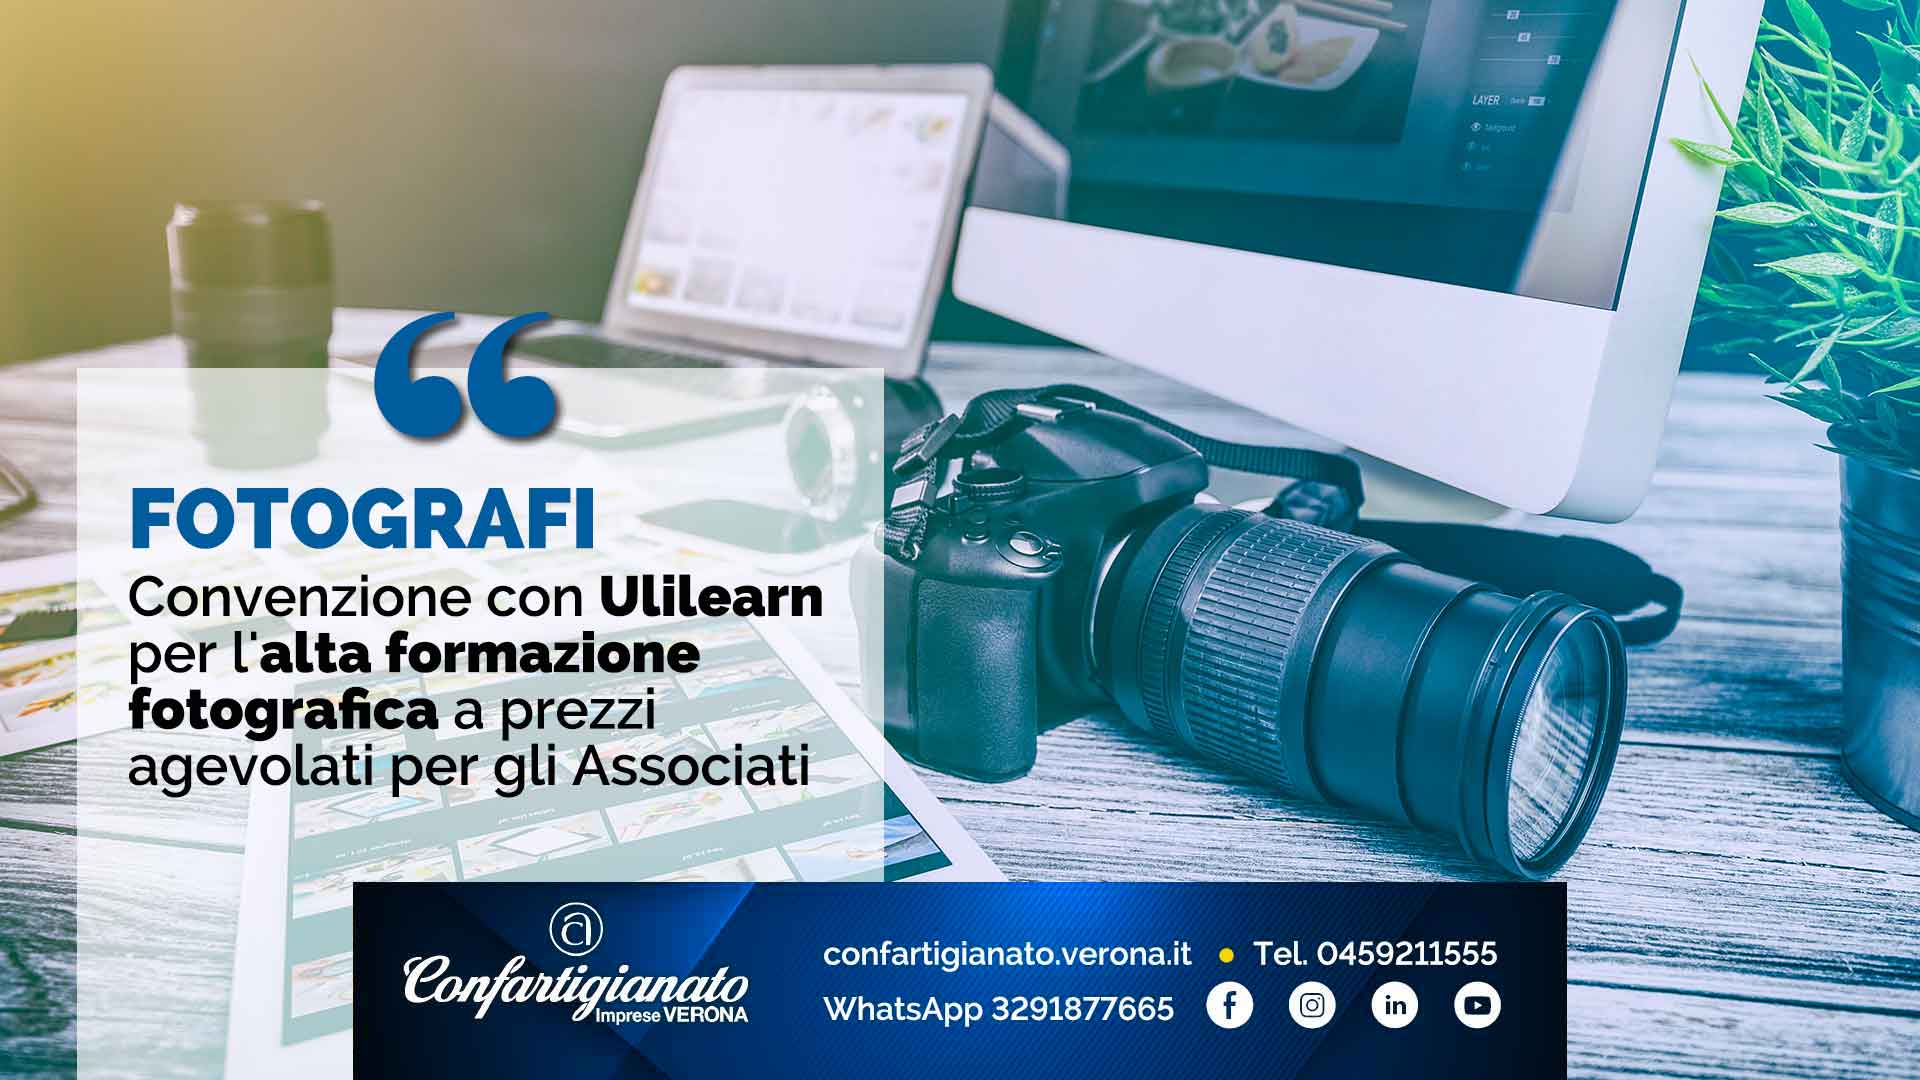 FOTOGRAFI – Convenzione con Ulilearn per l'alta formazione fotografica a prezzi agevolati per gli Associati